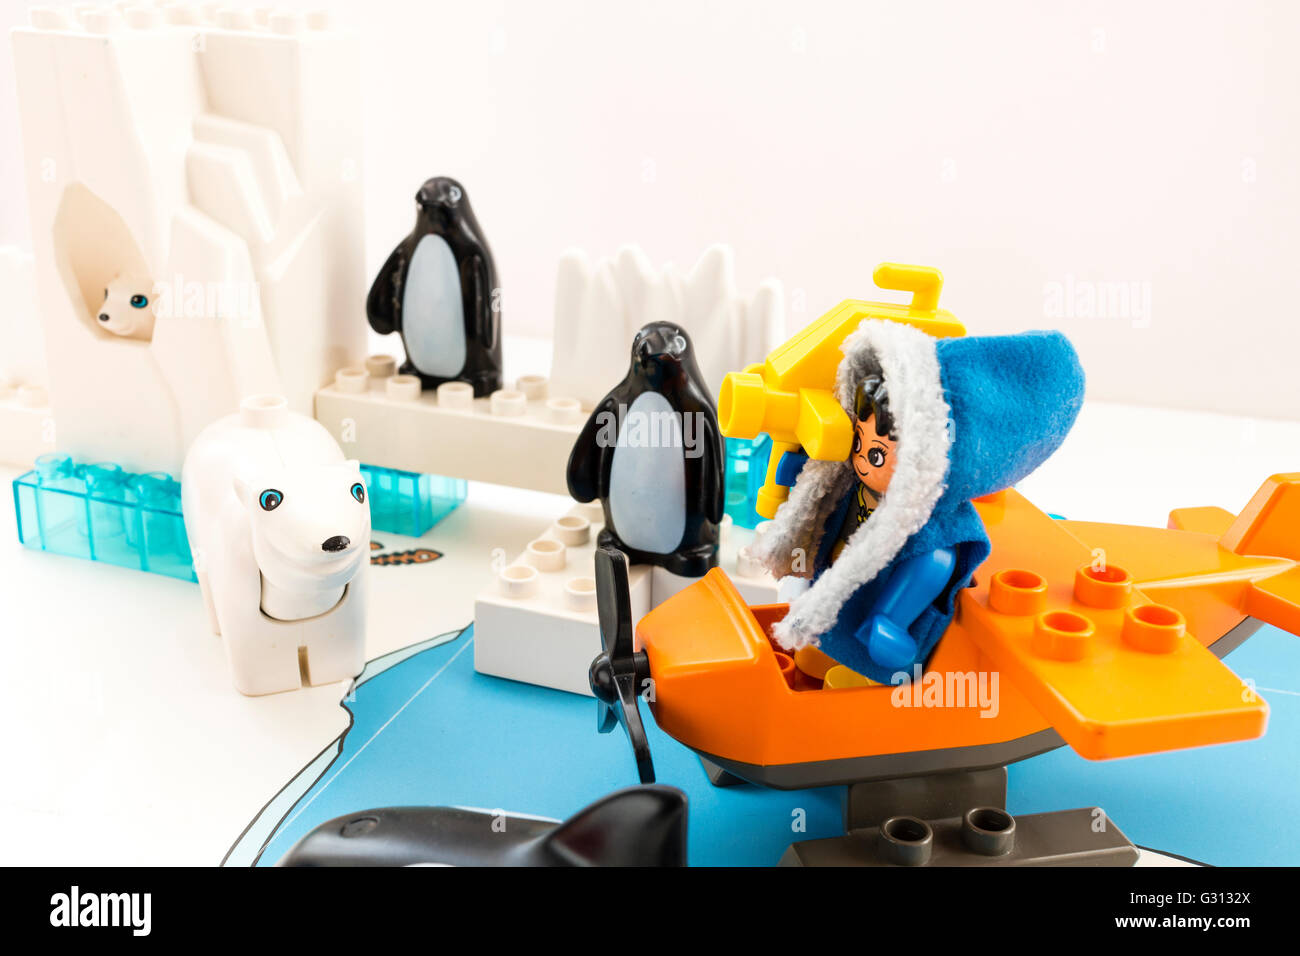 Lego duplo explore Arktis Spielplatzgeräte. Hohen Winkel nach unten im  Basislager auf dem Eis mit Lego Leute, Wasserflugzeug, Pinguine und  Eisbären Stockfotografie - Alamy